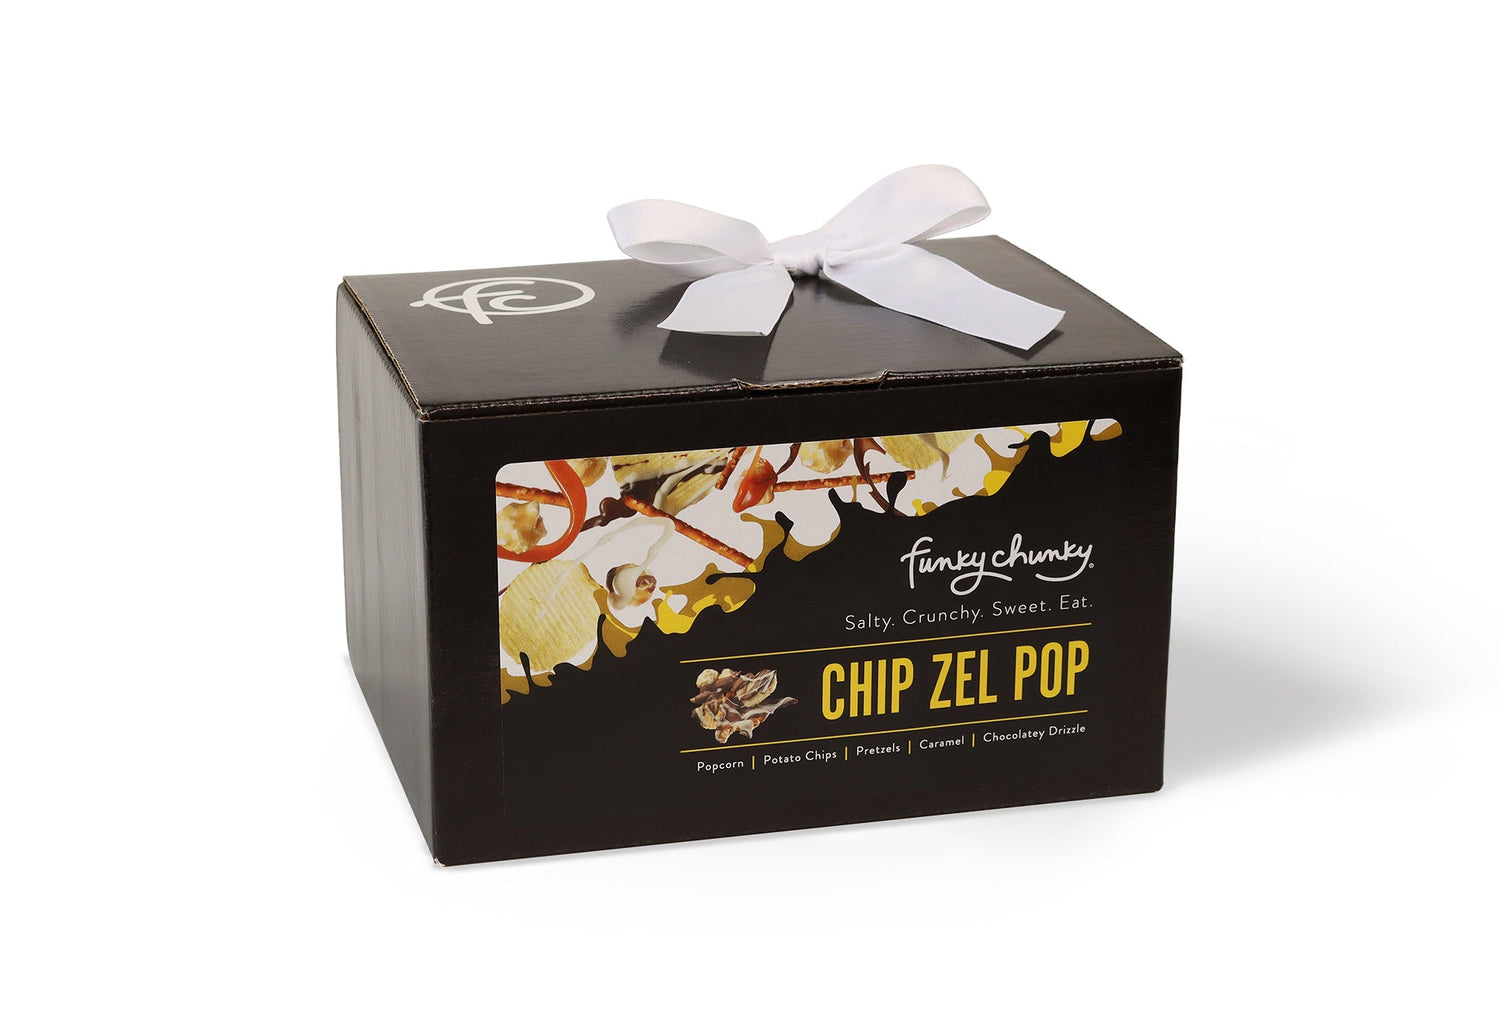 Chip Zel Pop